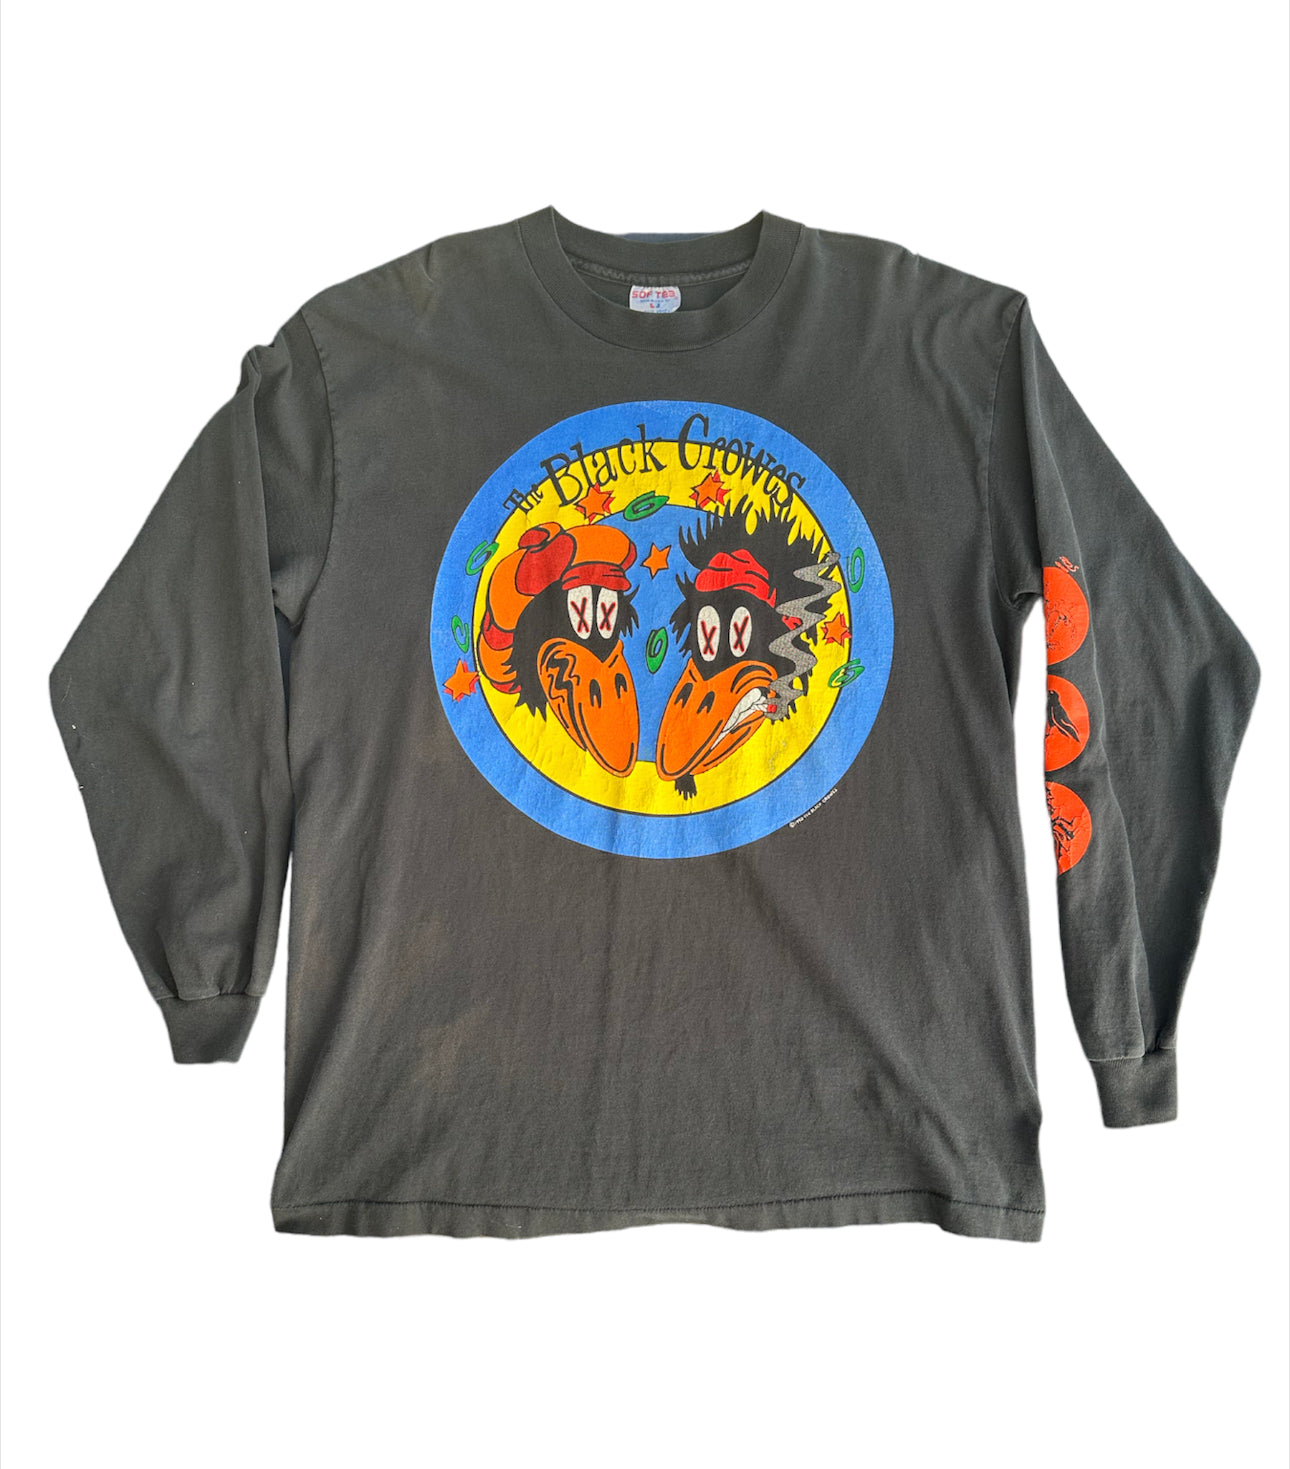 Vintage 1993 Black Crowes Concert T-Shirt